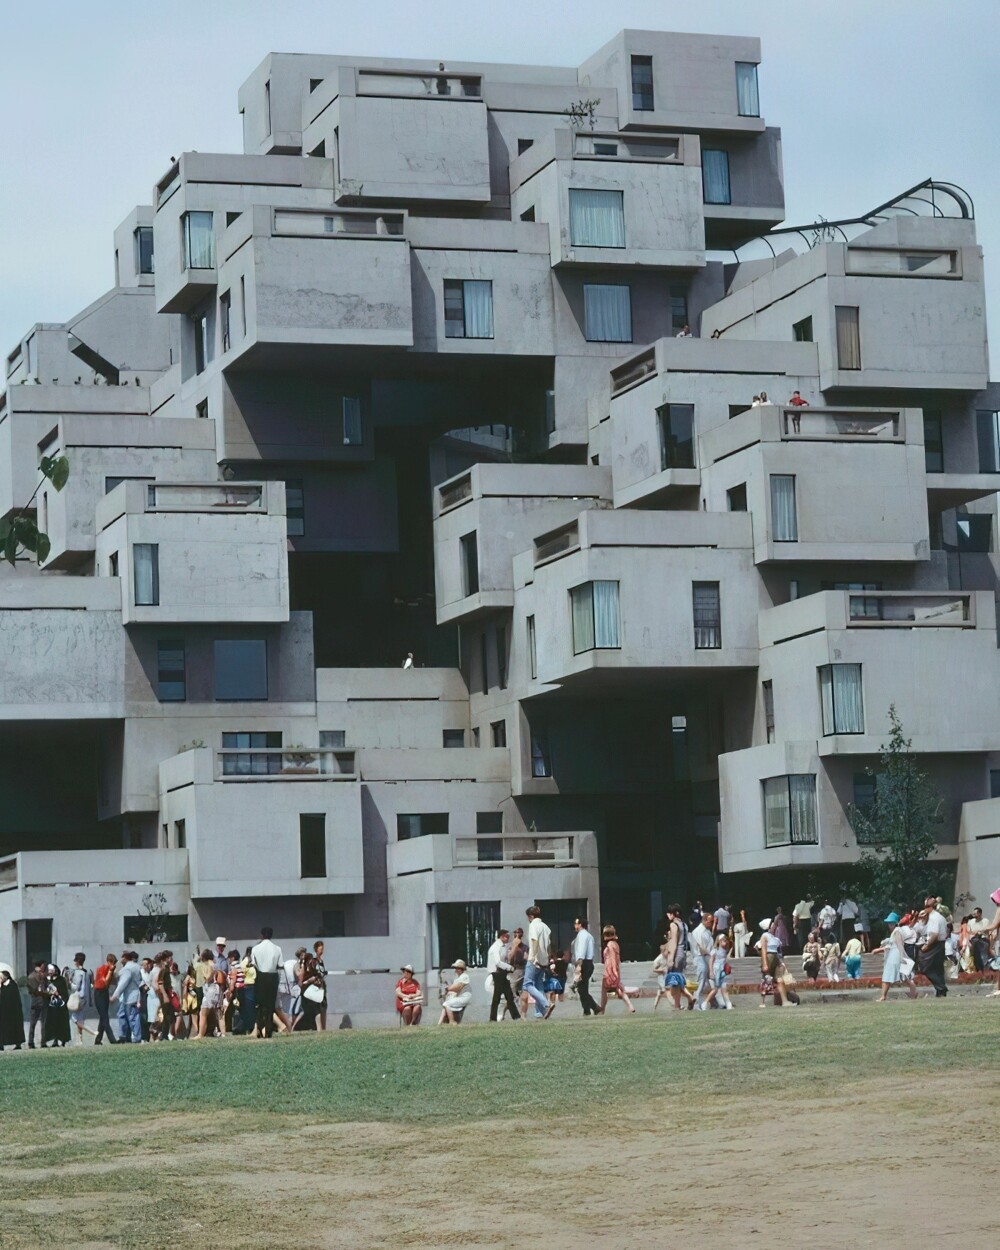 17. Habitat 67, модульный жилой комплекс на Всемирной выставке Expo 67 в Монреале, Квебек, Канада, 1967 год. Используется как жилой комплекс по сей день